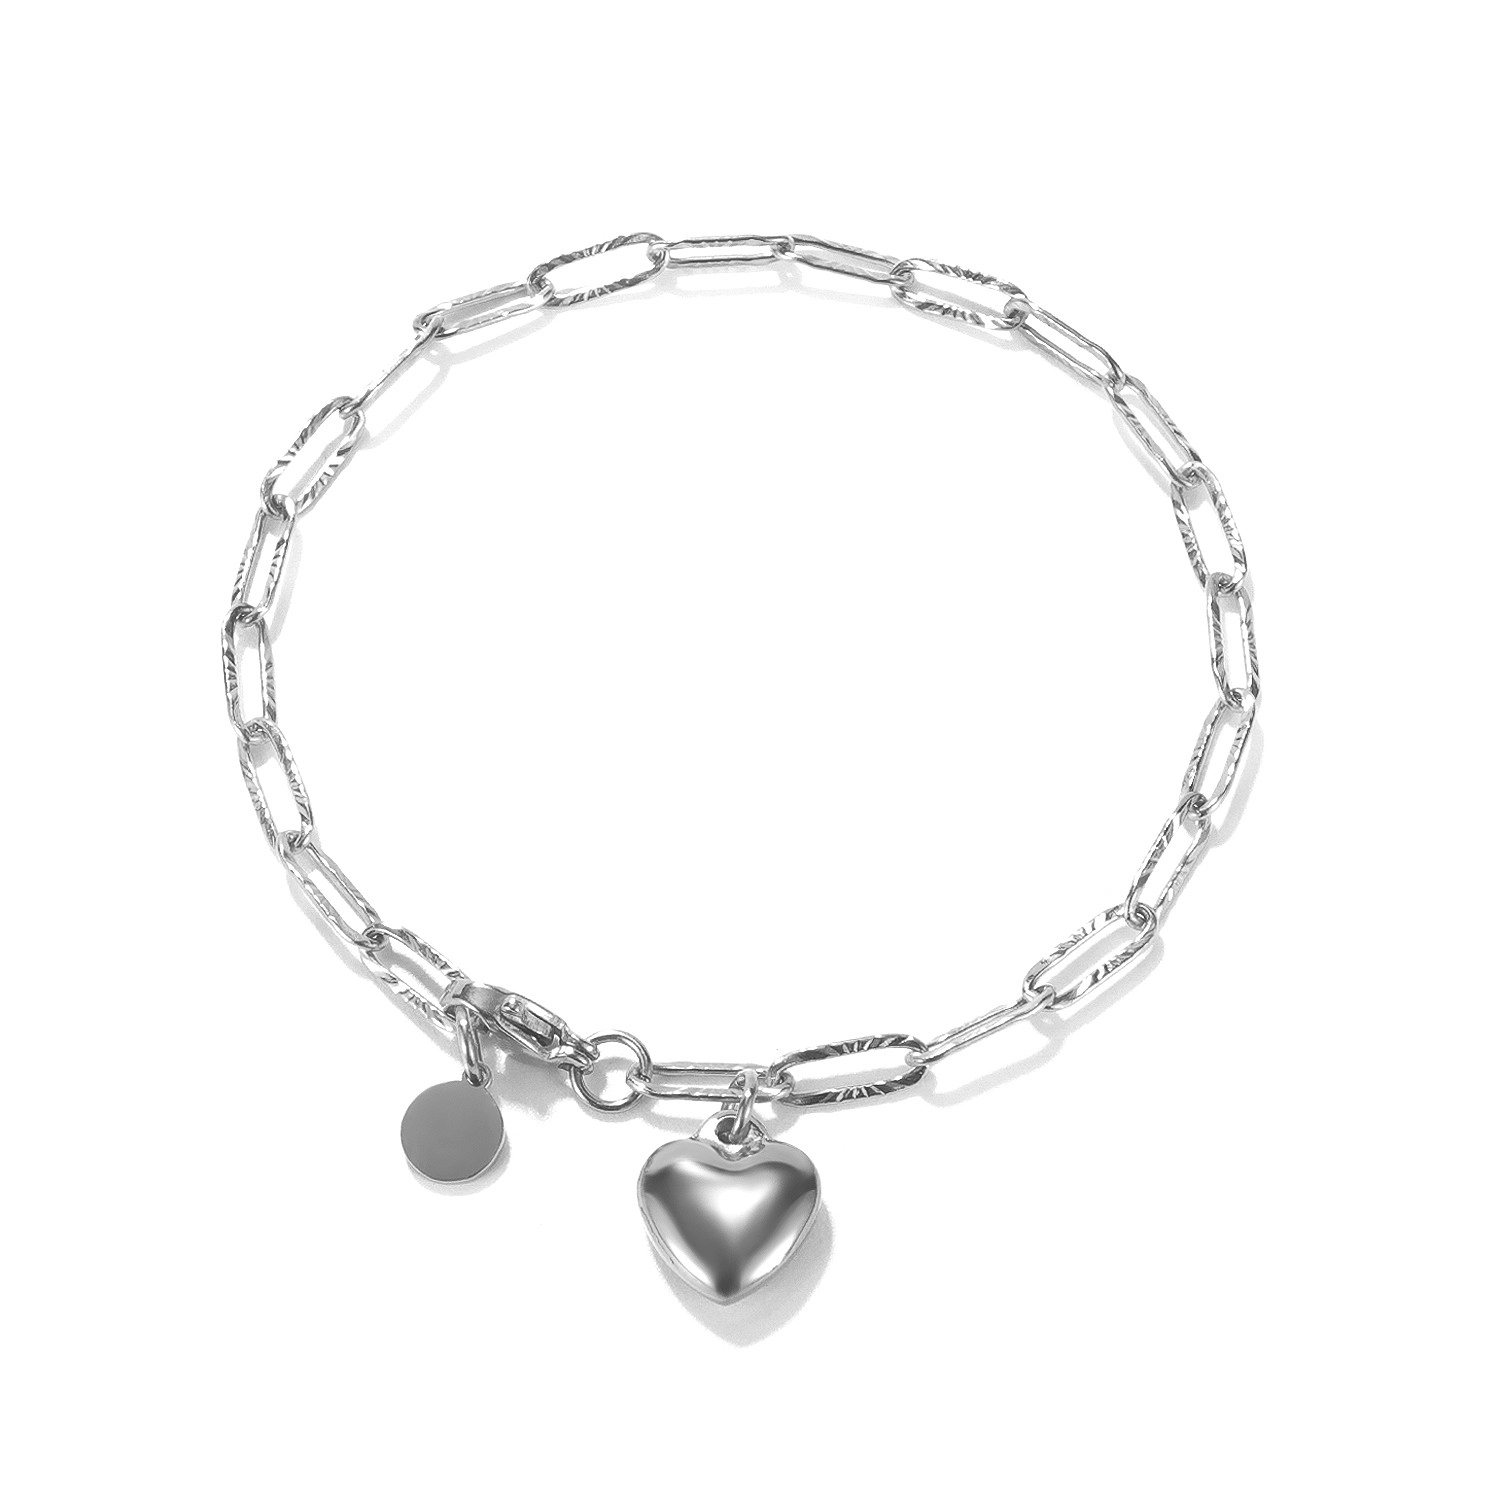 Ocelový náramek ve stříbrné barvě - plné srdce, kroužek, oválné články s paprskovitými zářezy